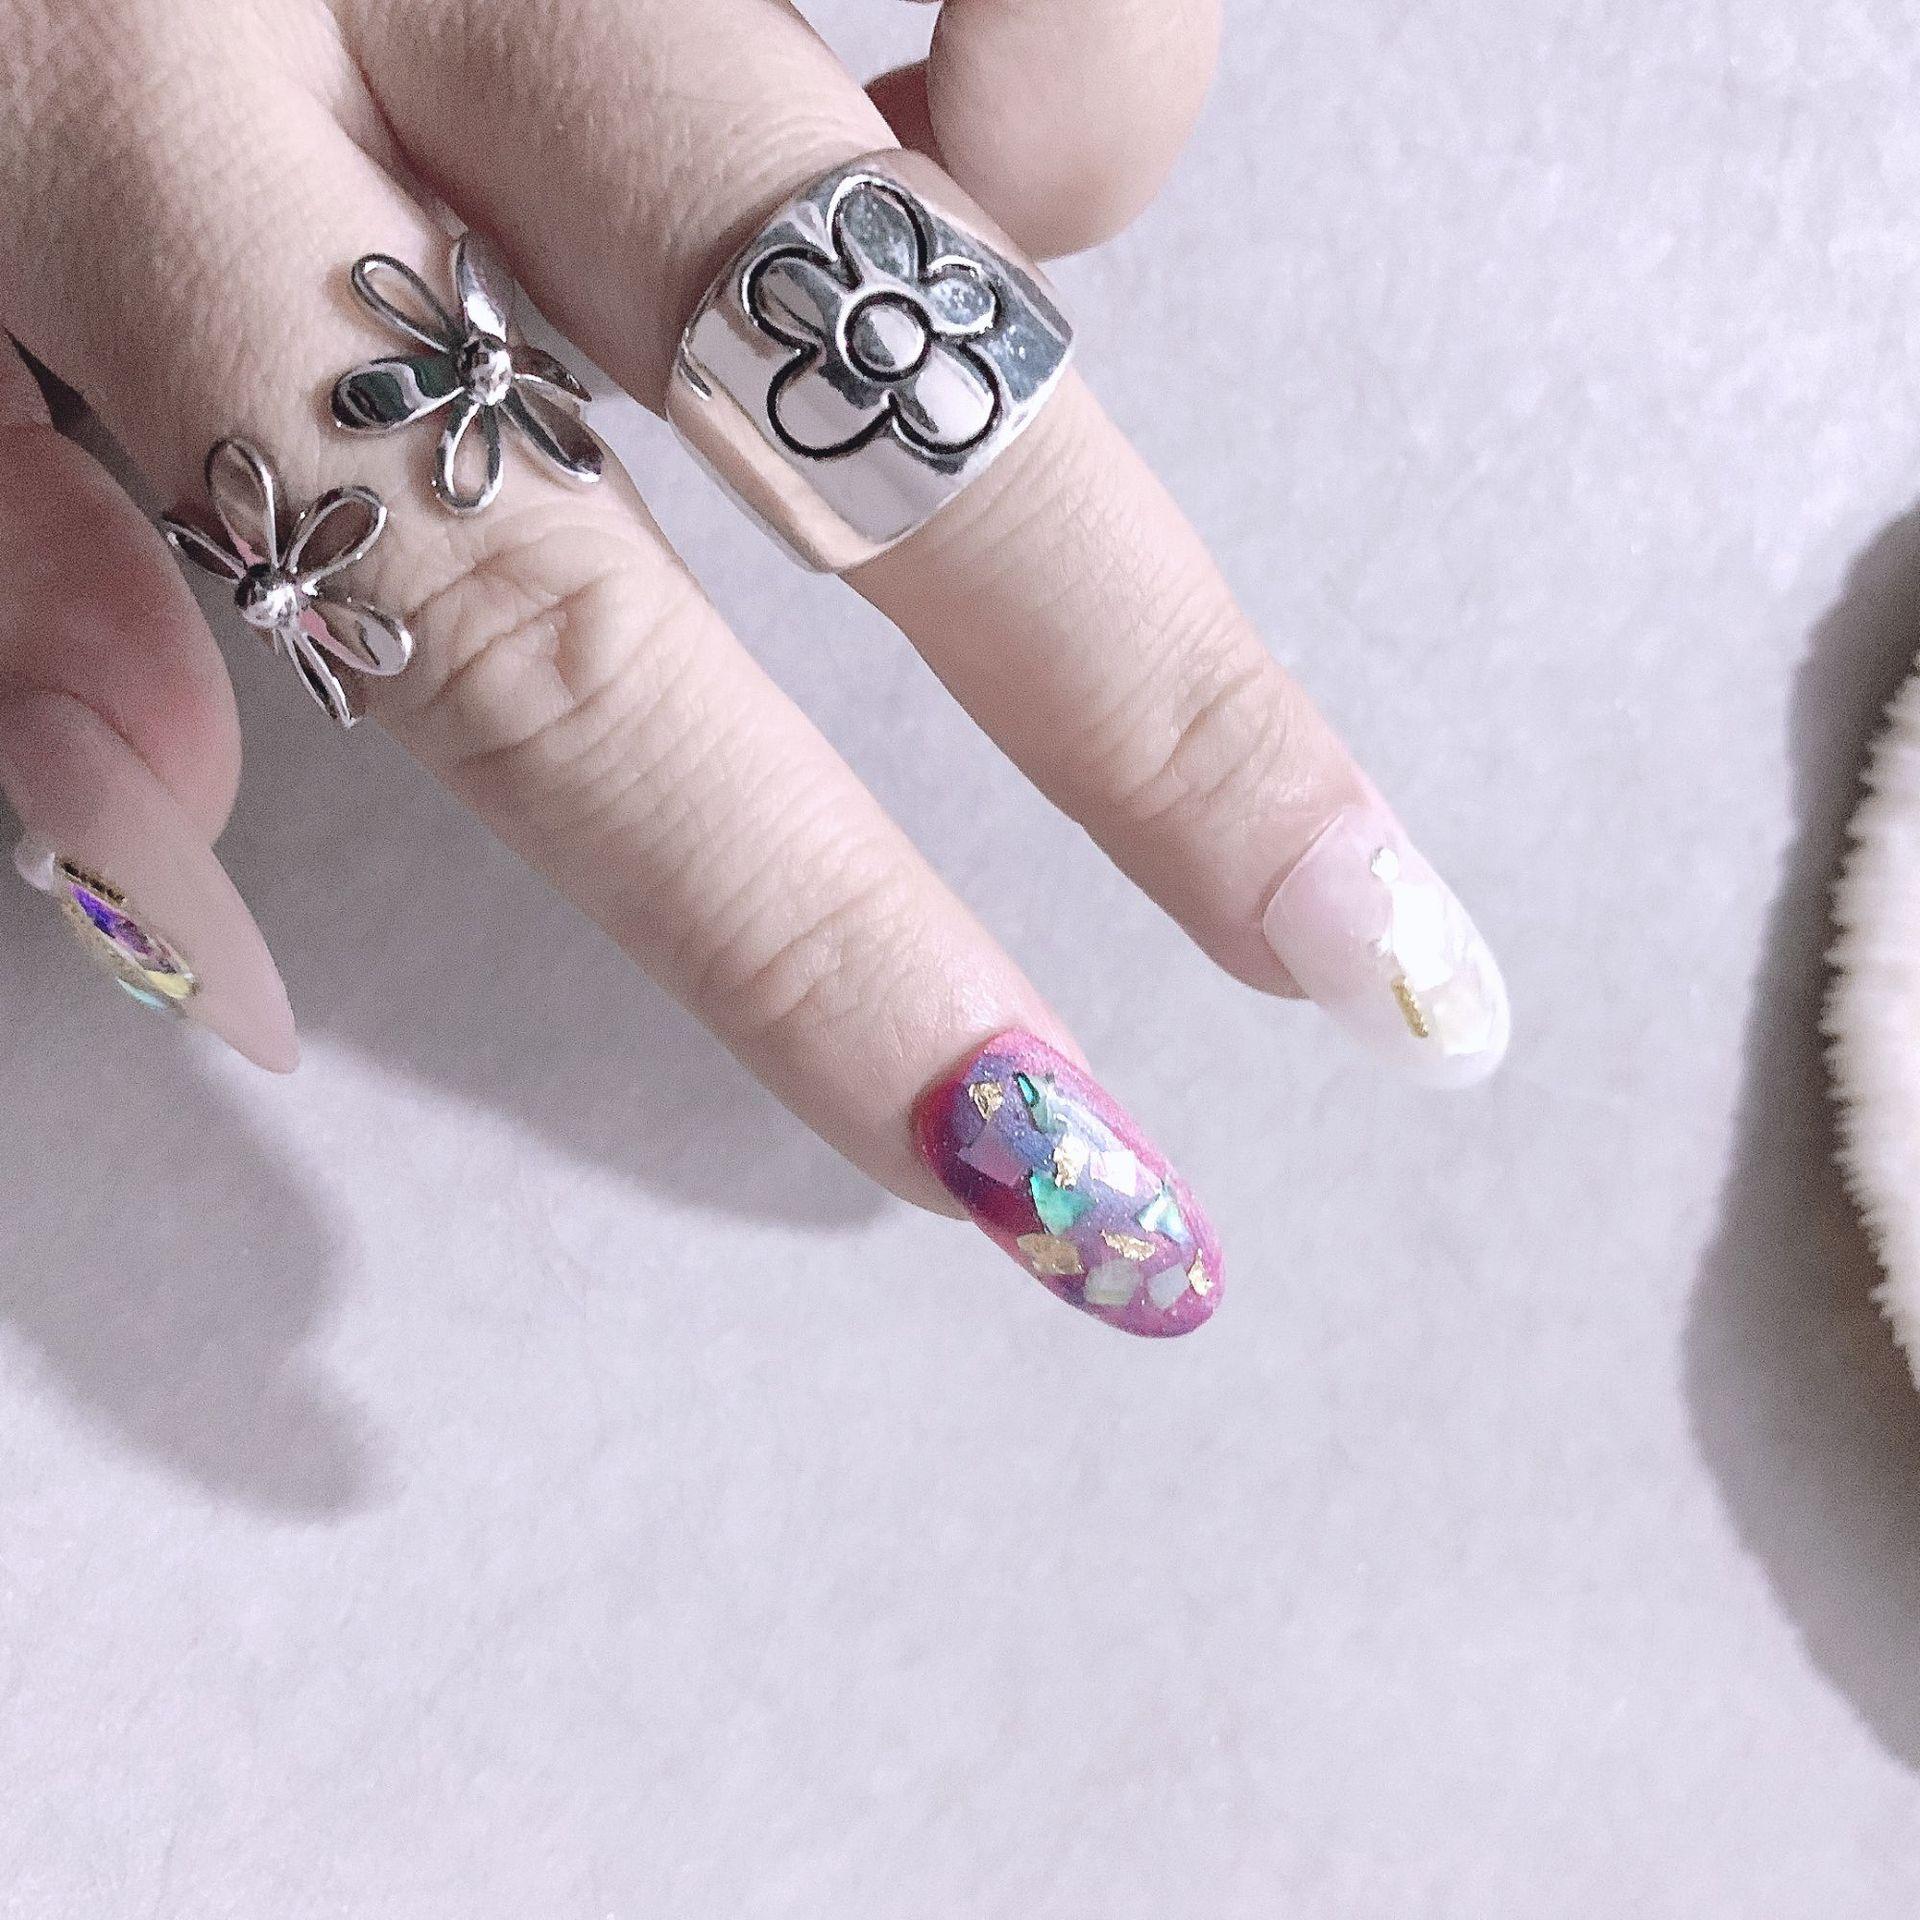 Изображение товара: кольцо женское Новинка 2021, цветок в Корейском стиле кольца для женщин, стильные винтажные кольца с цветком сливы в стиле панк, маленькие кольца с цветком маргаритки, парные кольца для вечеринок